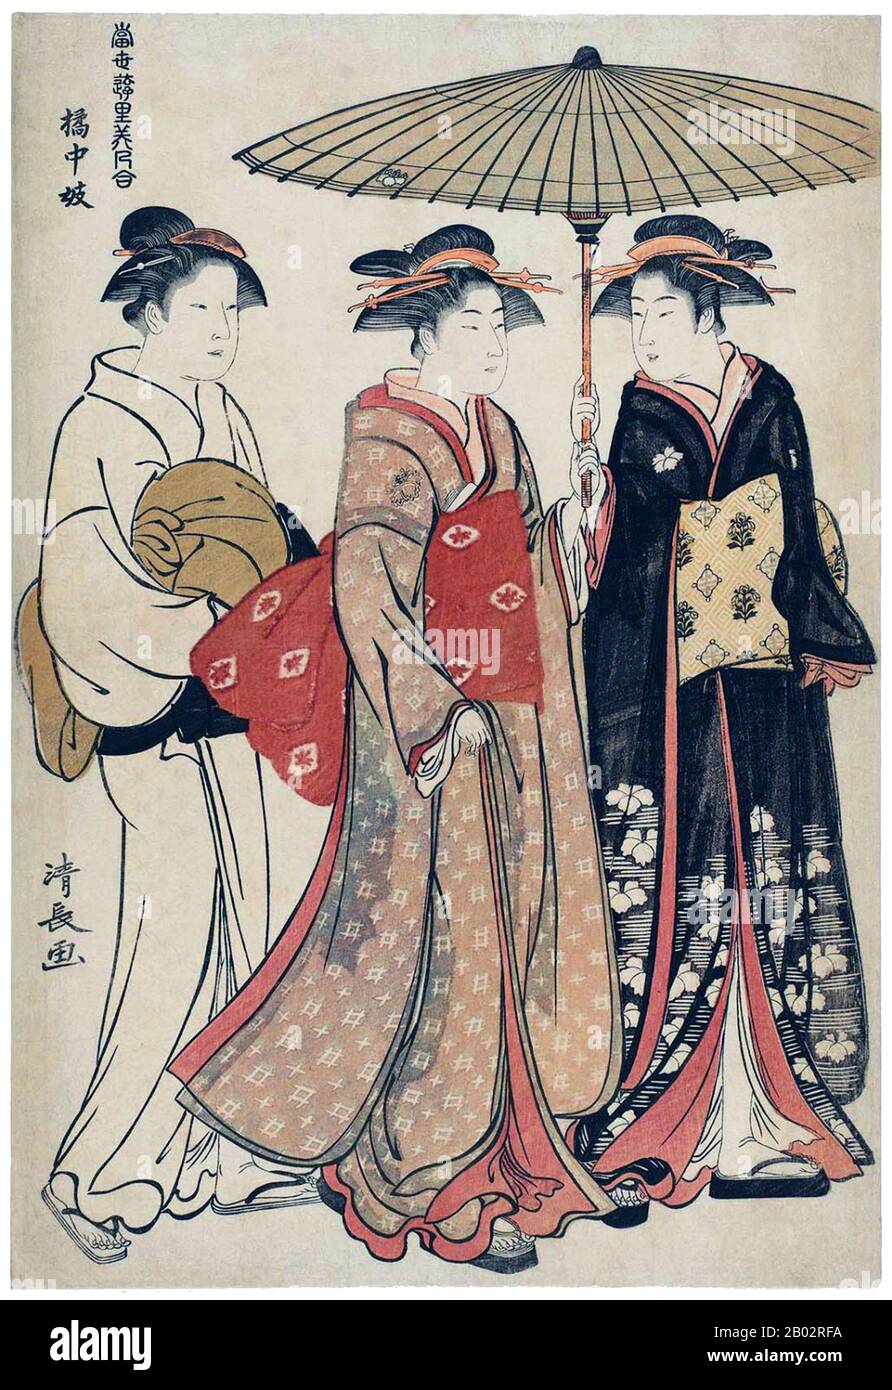 Torii Kiyonaga (鳥居 清長, 1752 - 28. Juni 1815) war ein japanischer Ukiyo-e-Printer und Maler der Torii-Schule. Ursprünglich hatte Sekiguchi Shinsuke, der Sohn eines Edo-Buchhändlers, Torii Kiyonaga als Kunstnamen (gō) übernommen. Obwohl er nicht biologisch mit der Familie Torii verwandt ist, wurde er nach dem Tod seines Adoptivvaters und Lehrers Torii Kiyomitsu Gruppenleiter. Der Meister Kiyomitsu starb im Jahr 1785-858; da sein Sohn jung starb und Kiyotsune, Kiyonagas Senior, ein weniger vielversprechender Künstler war, war Kiyonaga die offensichtliche Wahl, Kiyomitsu als Nachfolger der Leitung der Torii-Schule zu führen. Er dela jedoch Stockfoto